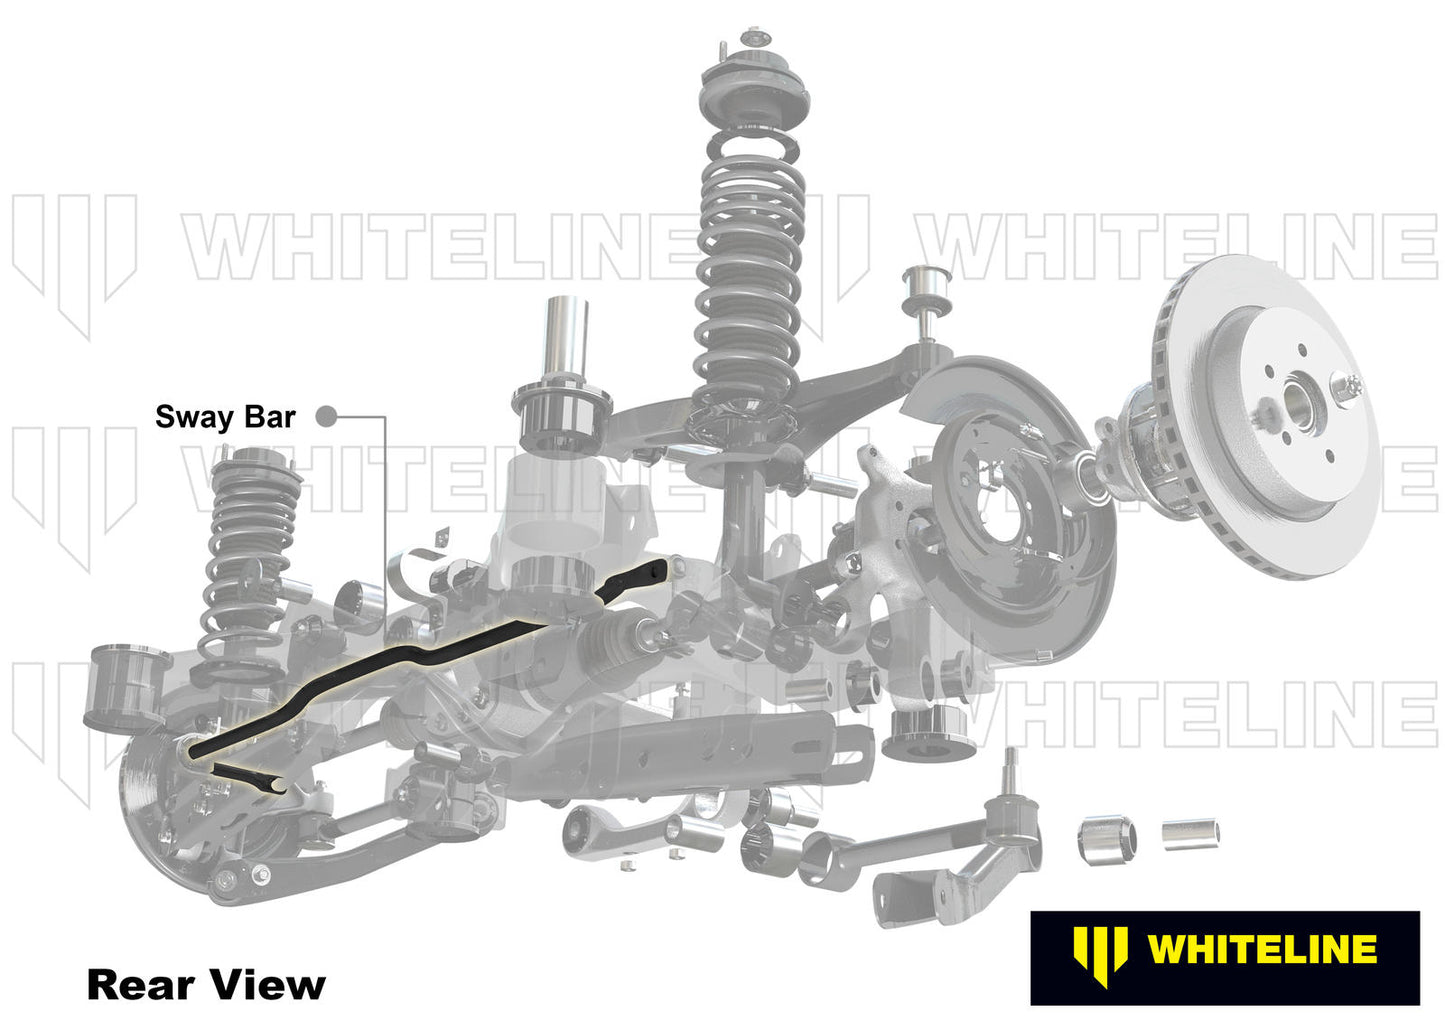 Rear Anti-Roll Bar 16mm Heavy Duty Blade Adjustable Subaru BRZ & Toyota GT86 2012-2019